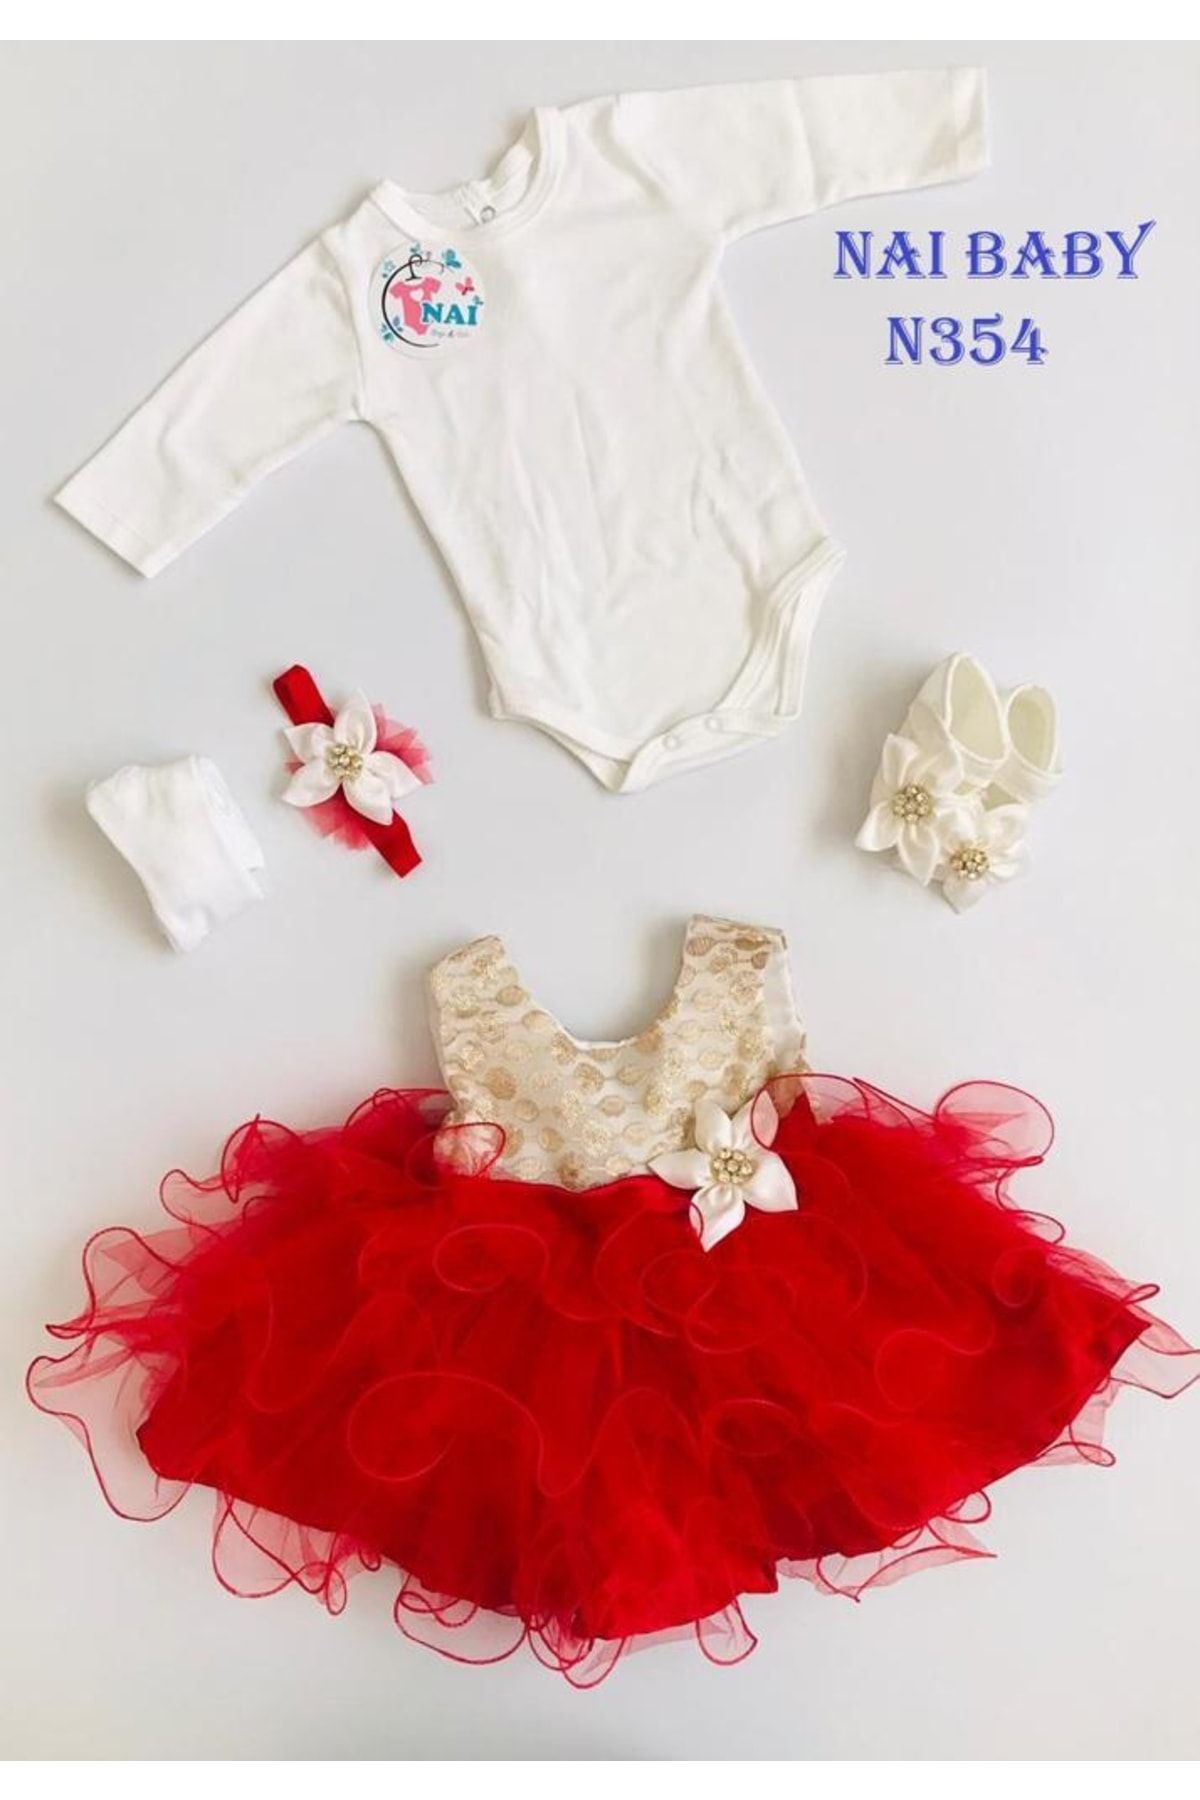 Nai baby Kız Bebek Mevlütlük Özel Gün Kıyafeti Hediyelik Bayramlık